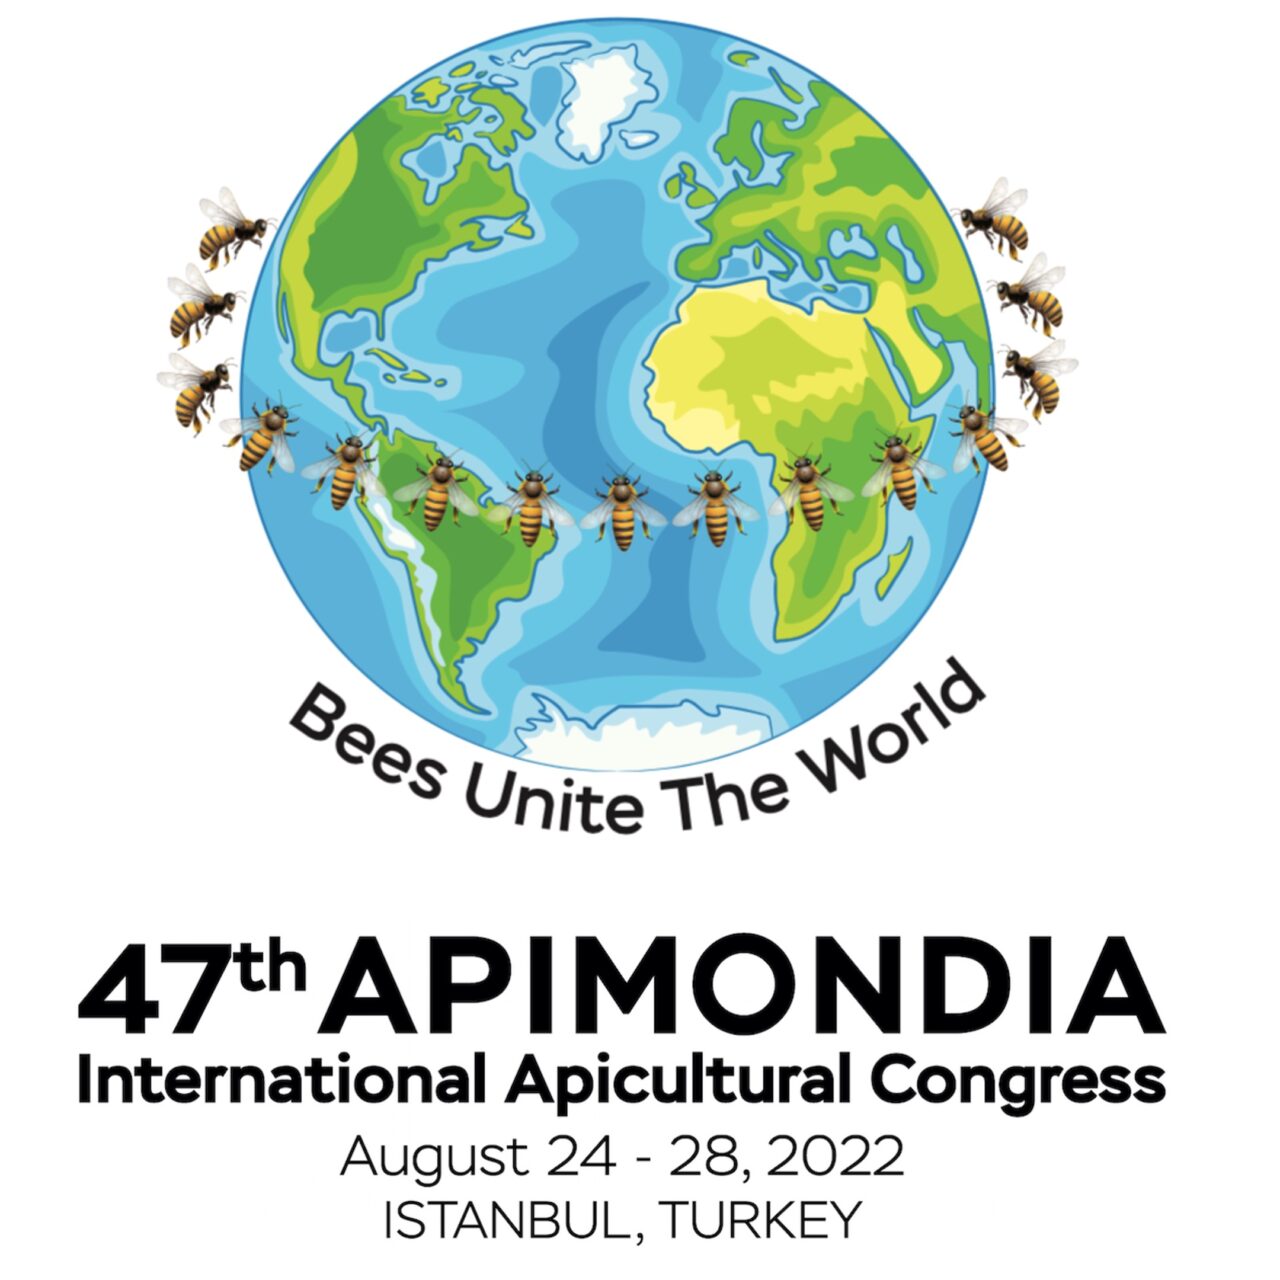 The 47th APIMONDIA CONGRESS